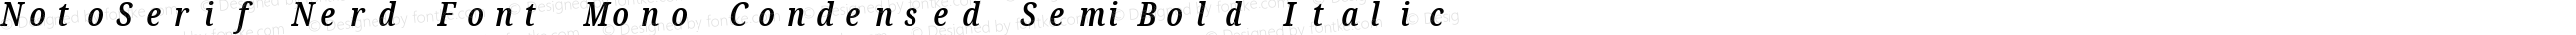 Noto Serif Condensed SemiBold Italic Nerd Font Complete Mono